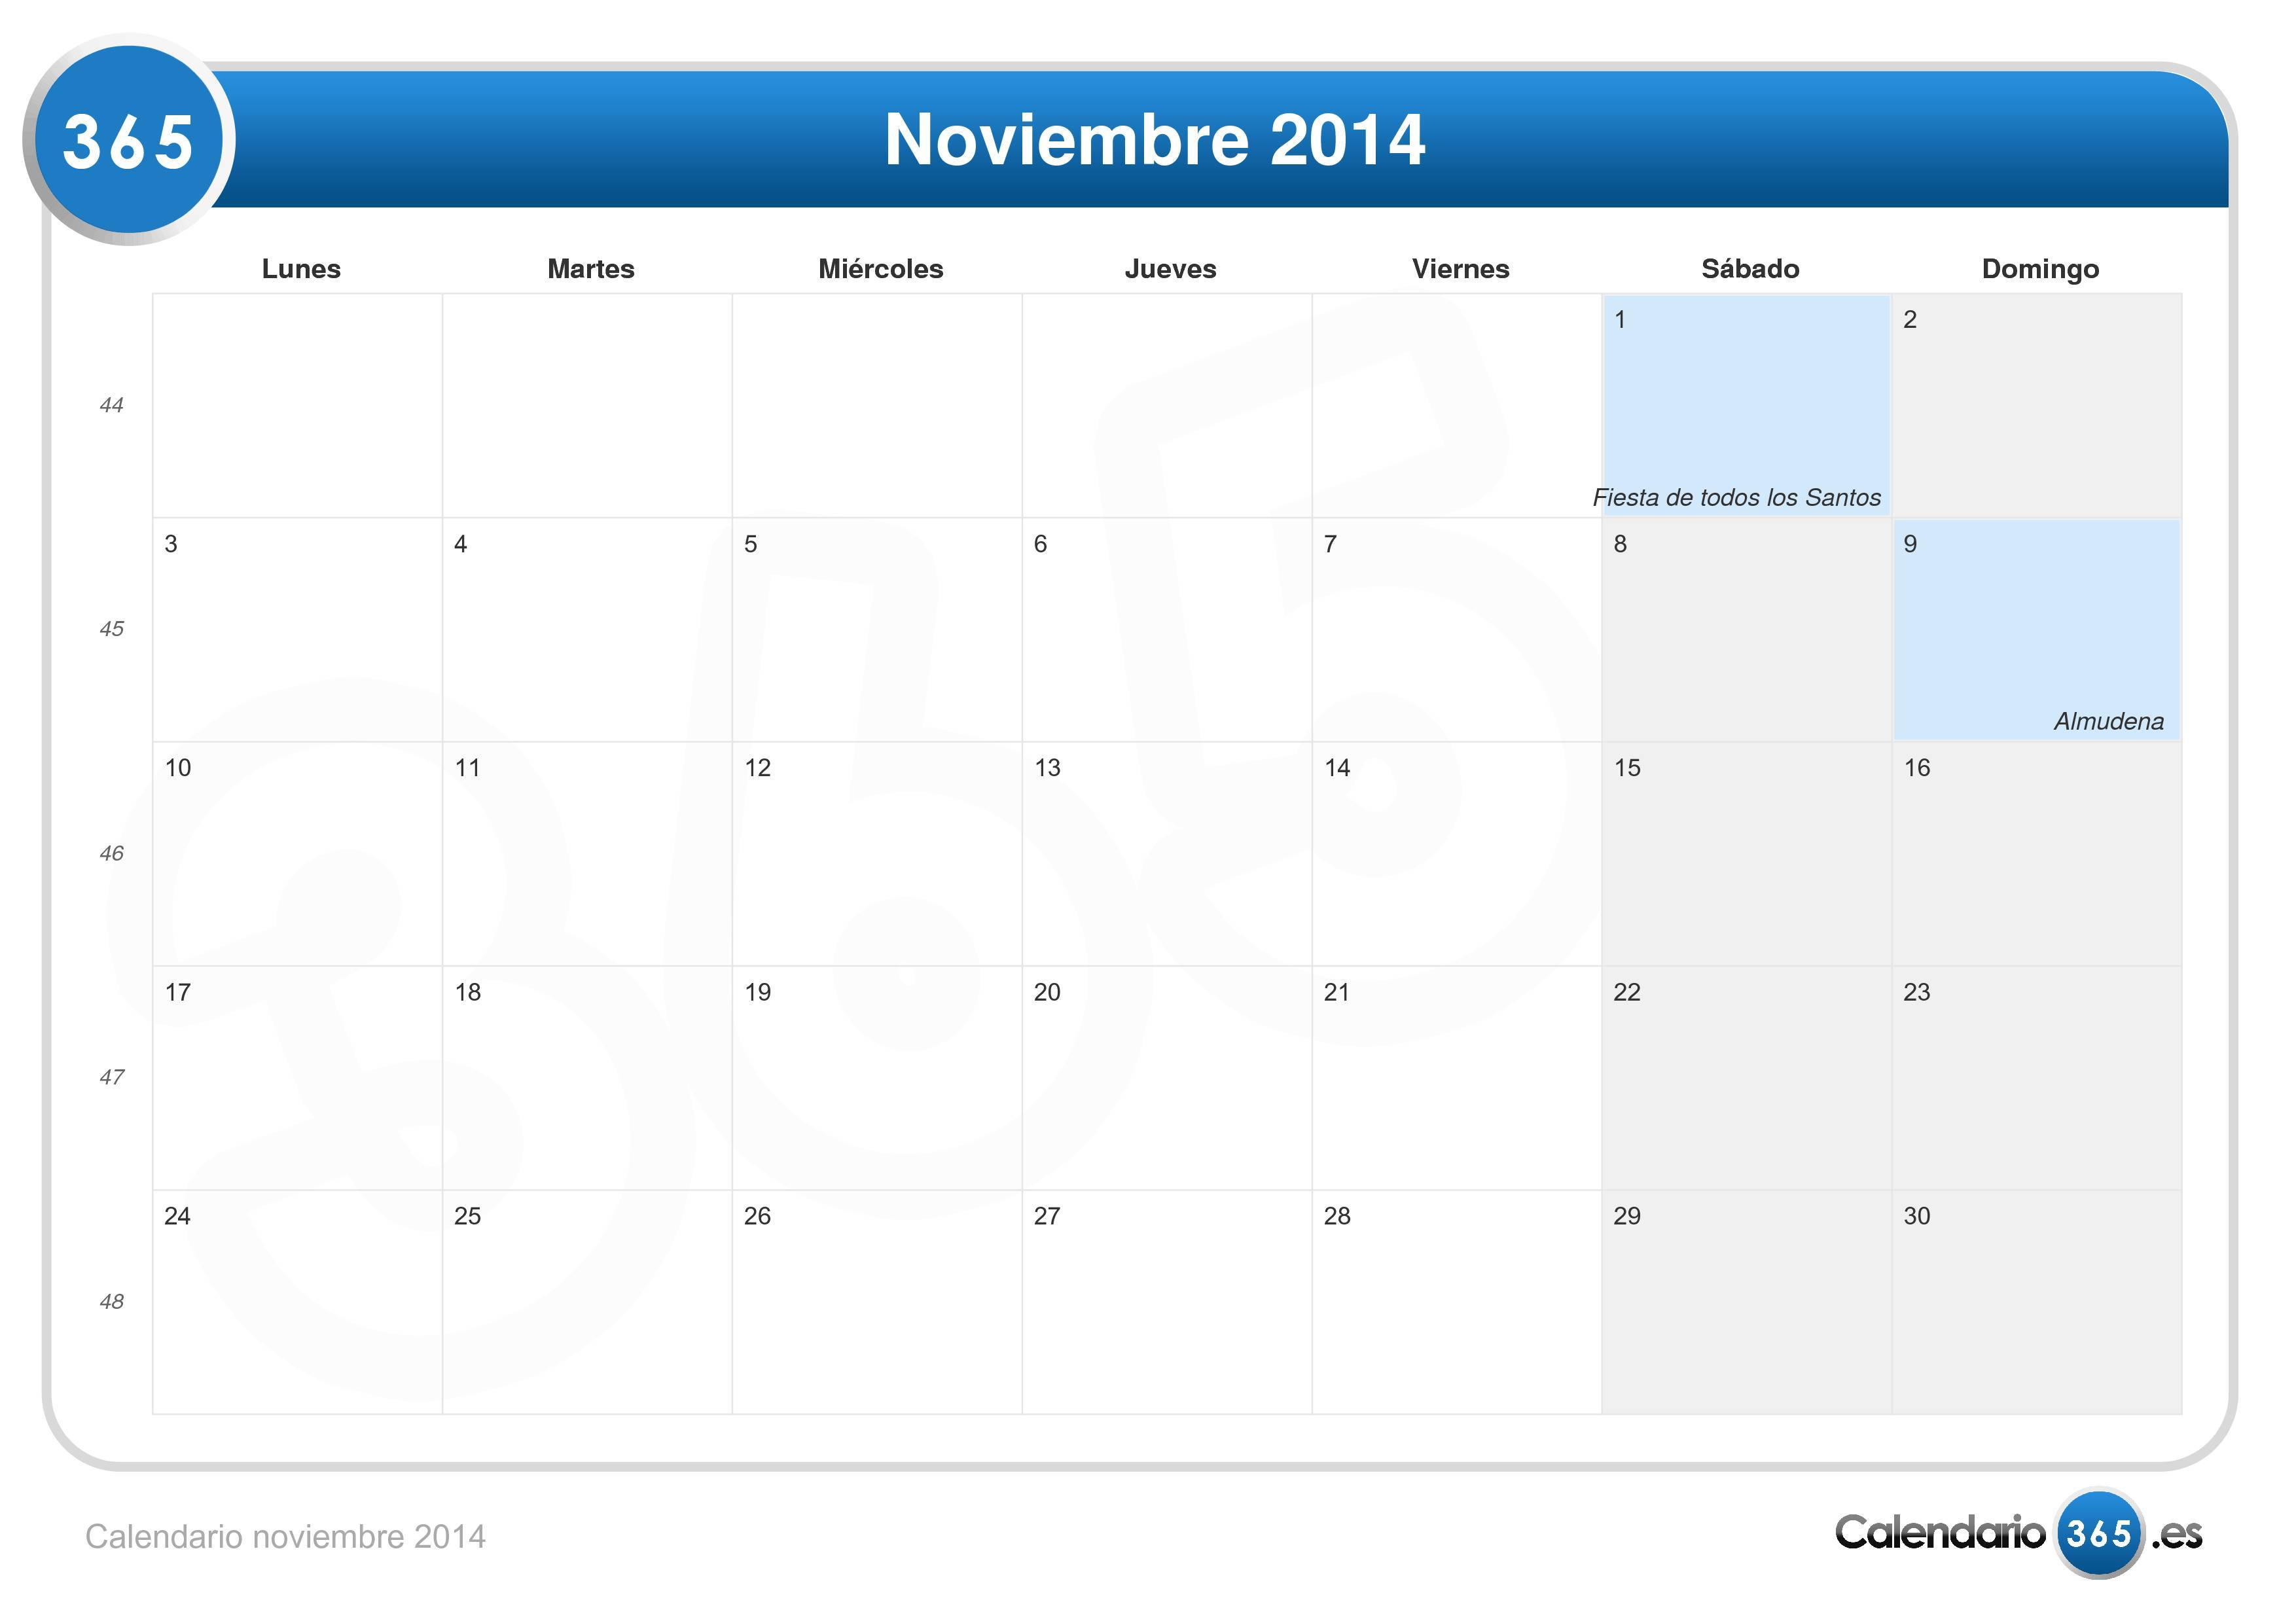 Calendario noviembre 2014 para imprimir - iCalendario.net